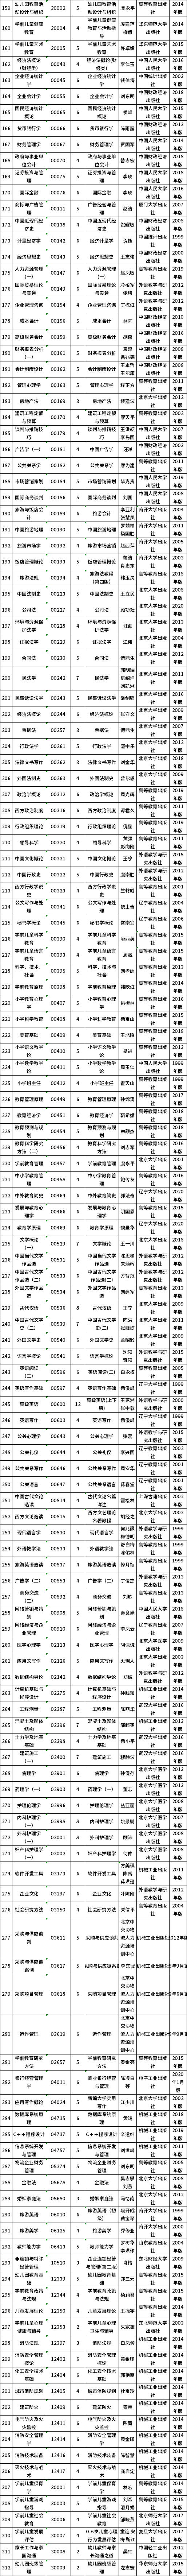 2022年10月云南省高等教育自学考试开考课程使用教材目录